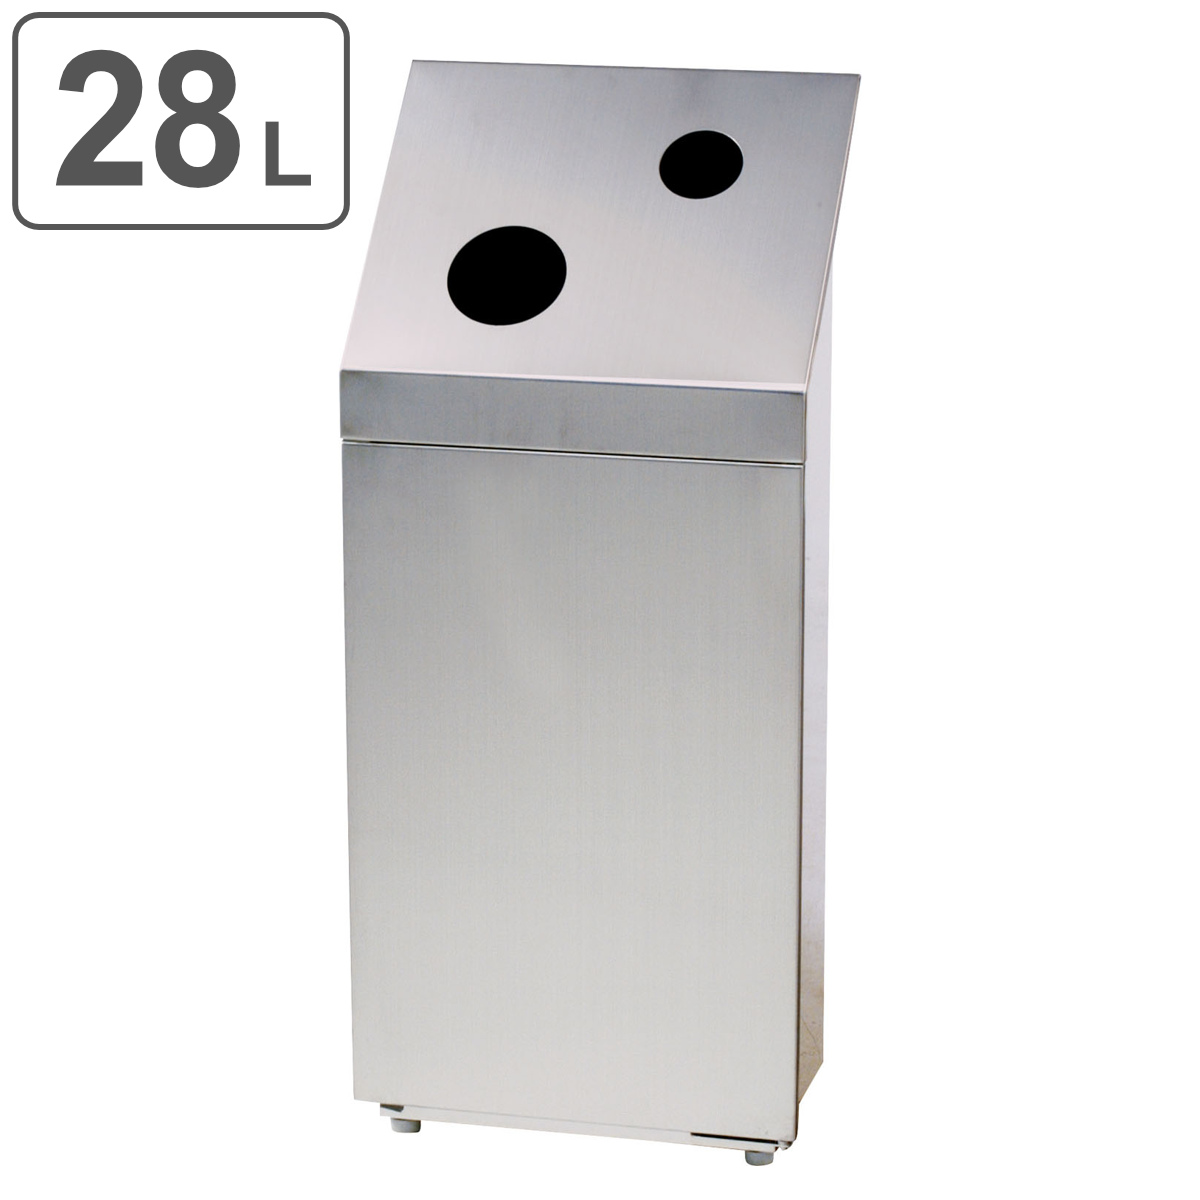 屋内用ゴミ箱 業務用ダストボックス 28L 角穴 一般用 分別